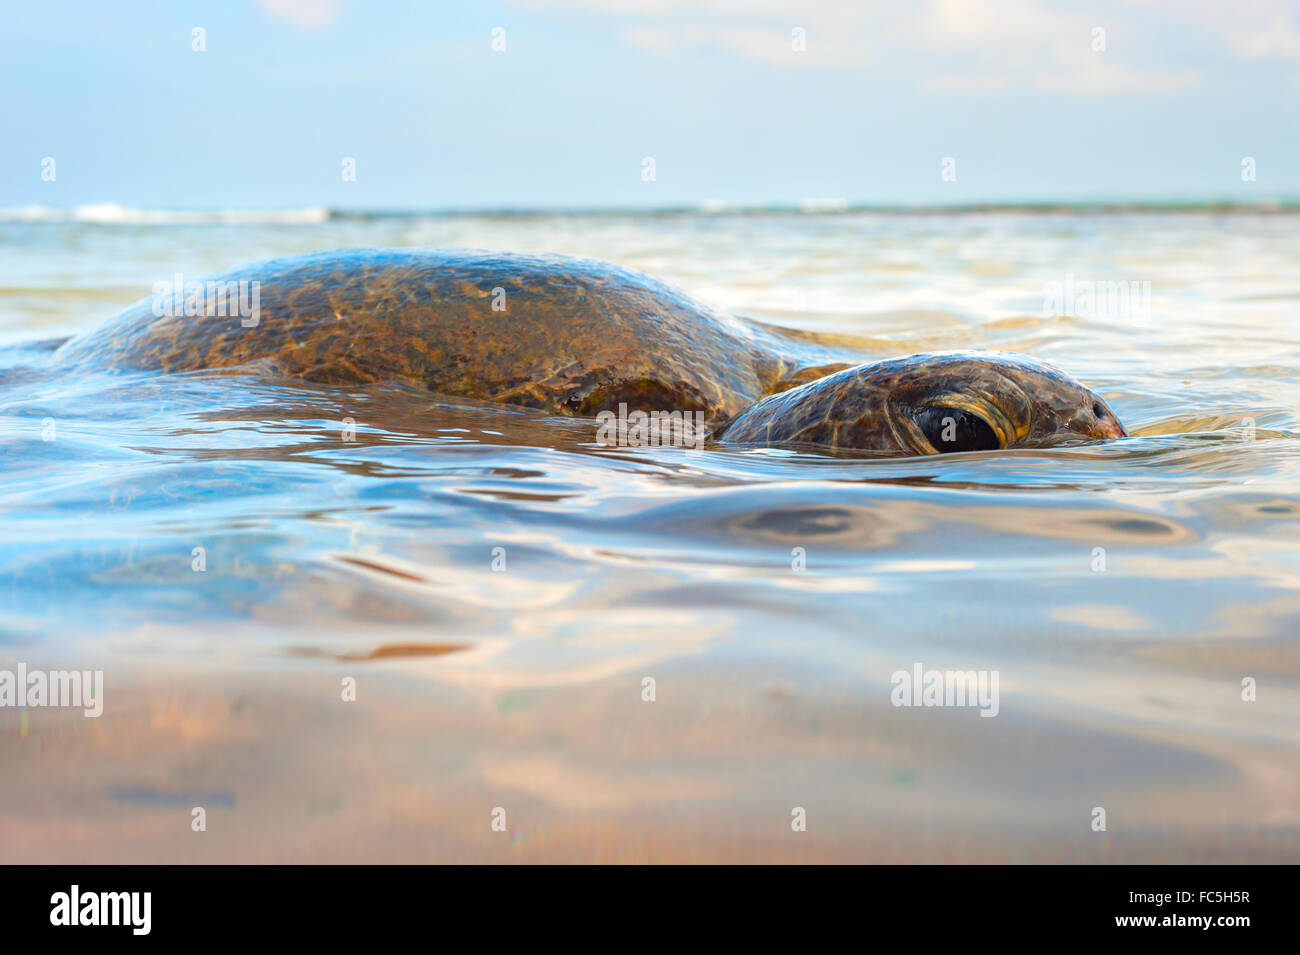 Ocean turtle Stock Photo